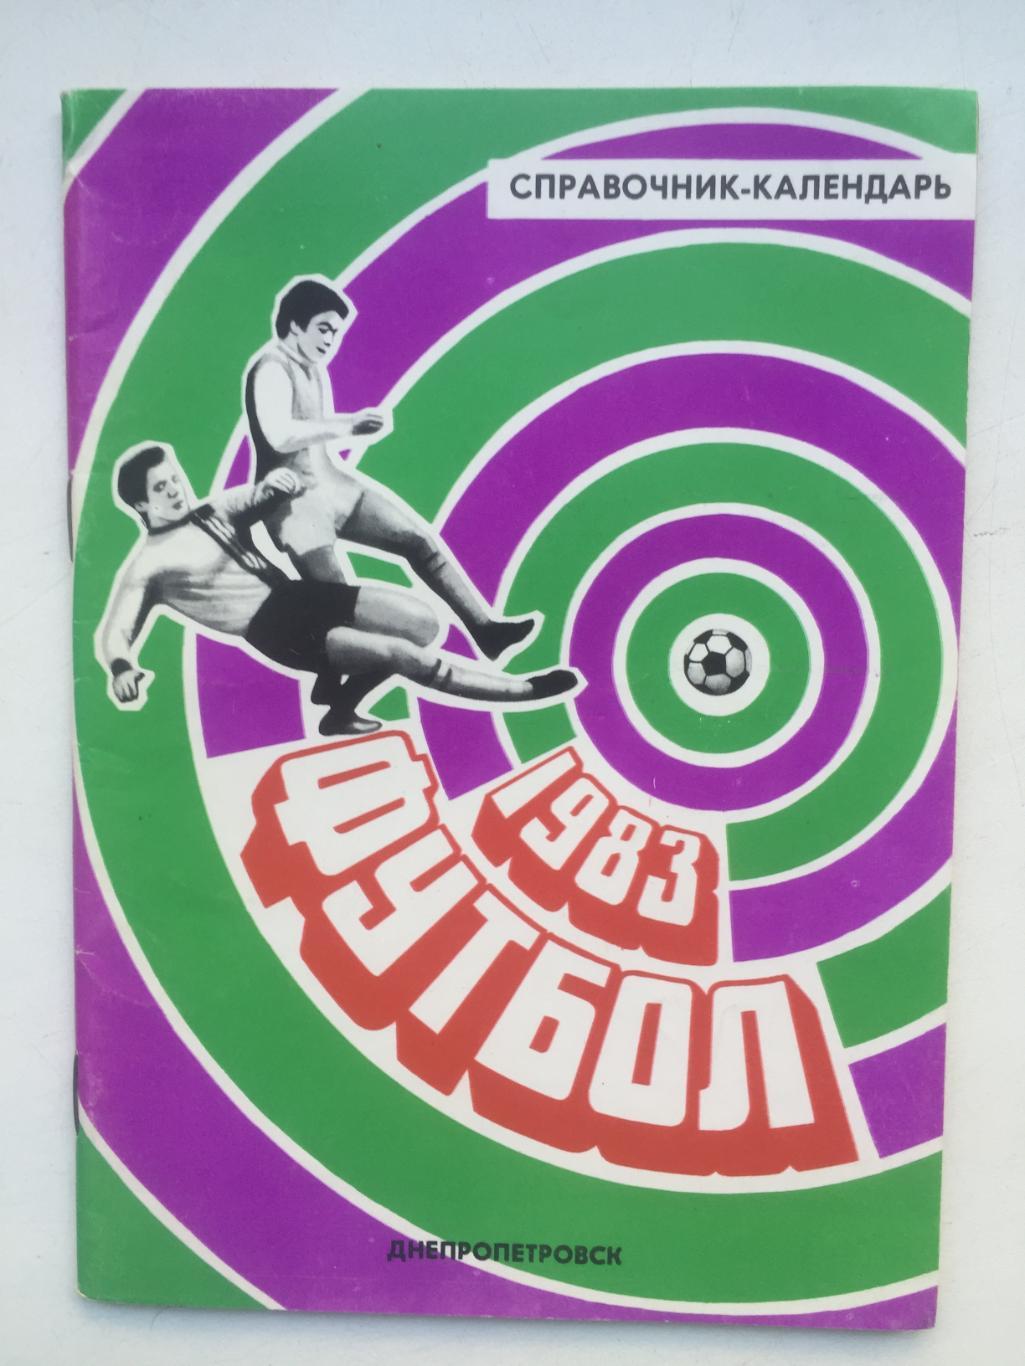 Календарь - справочник Днепропетровск 1983